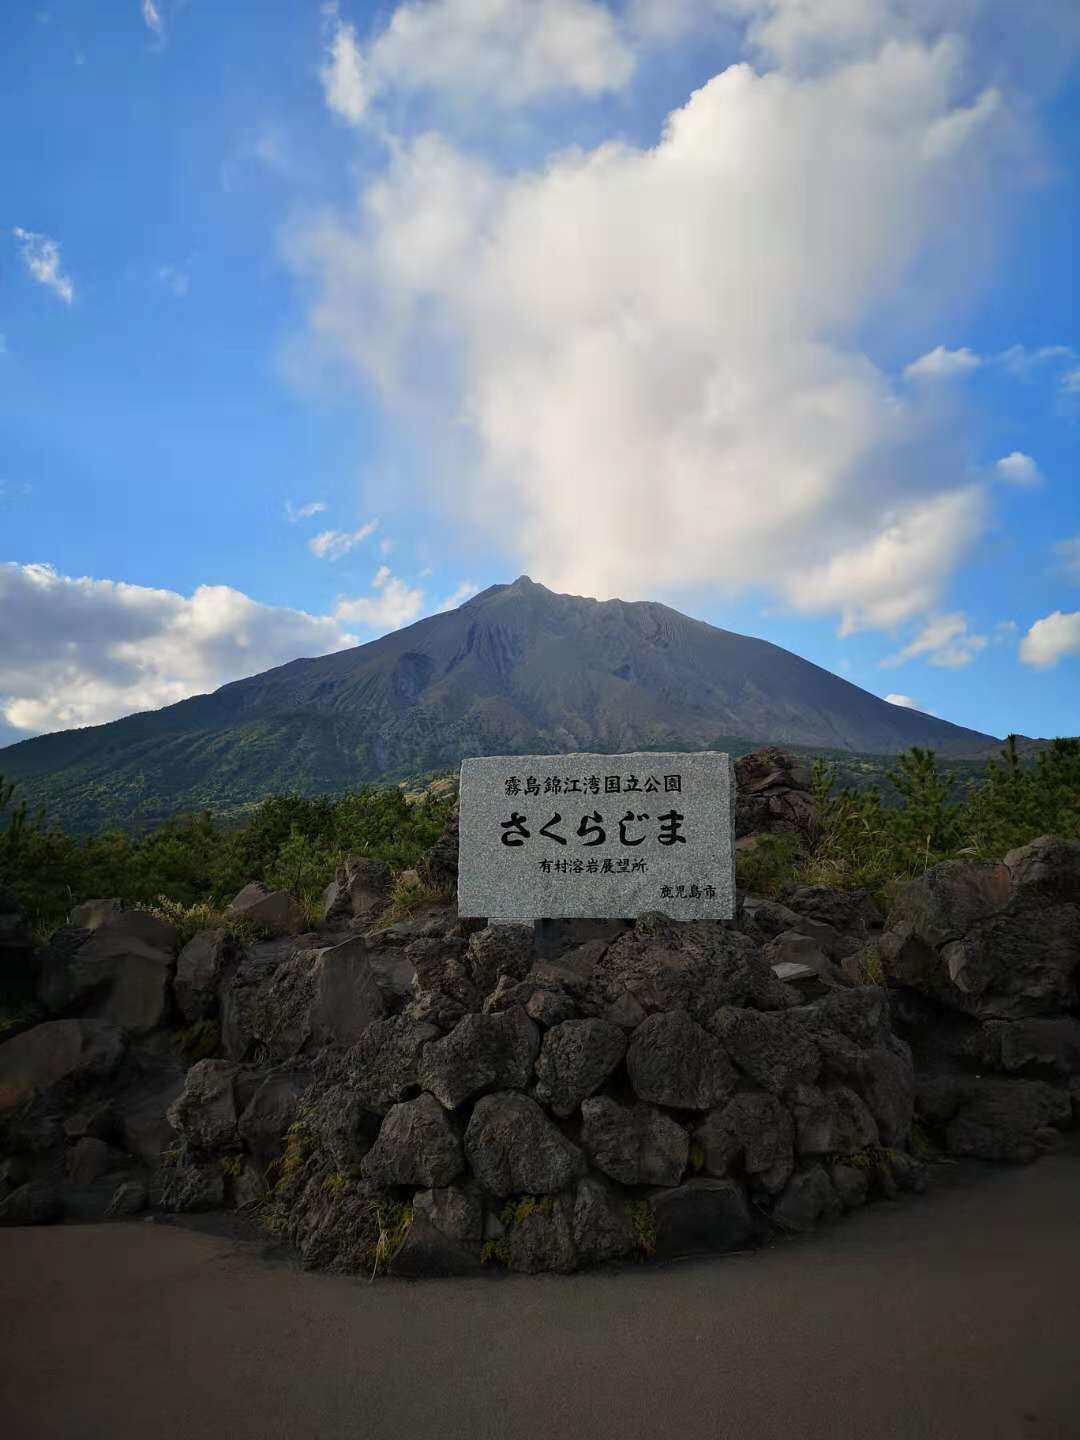 【拜访全球最浪漫的活火山】鹿儿岛·樱岛15000字超长旅行攻略 - 哔哩哔哩